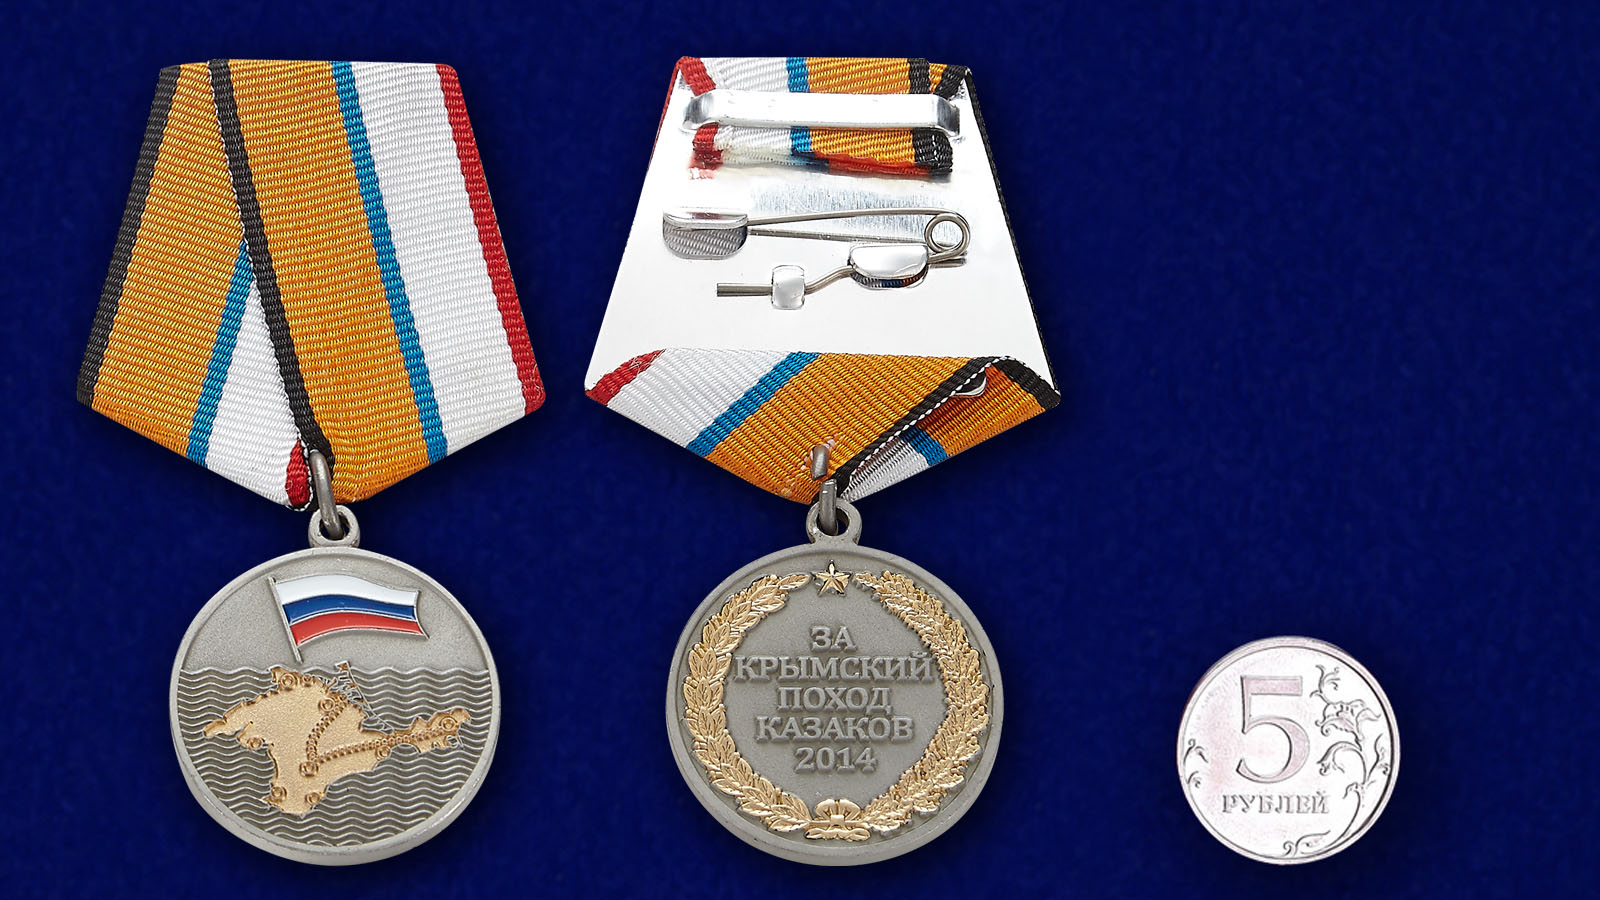 Медаль "За Крымский поход" казаков России 